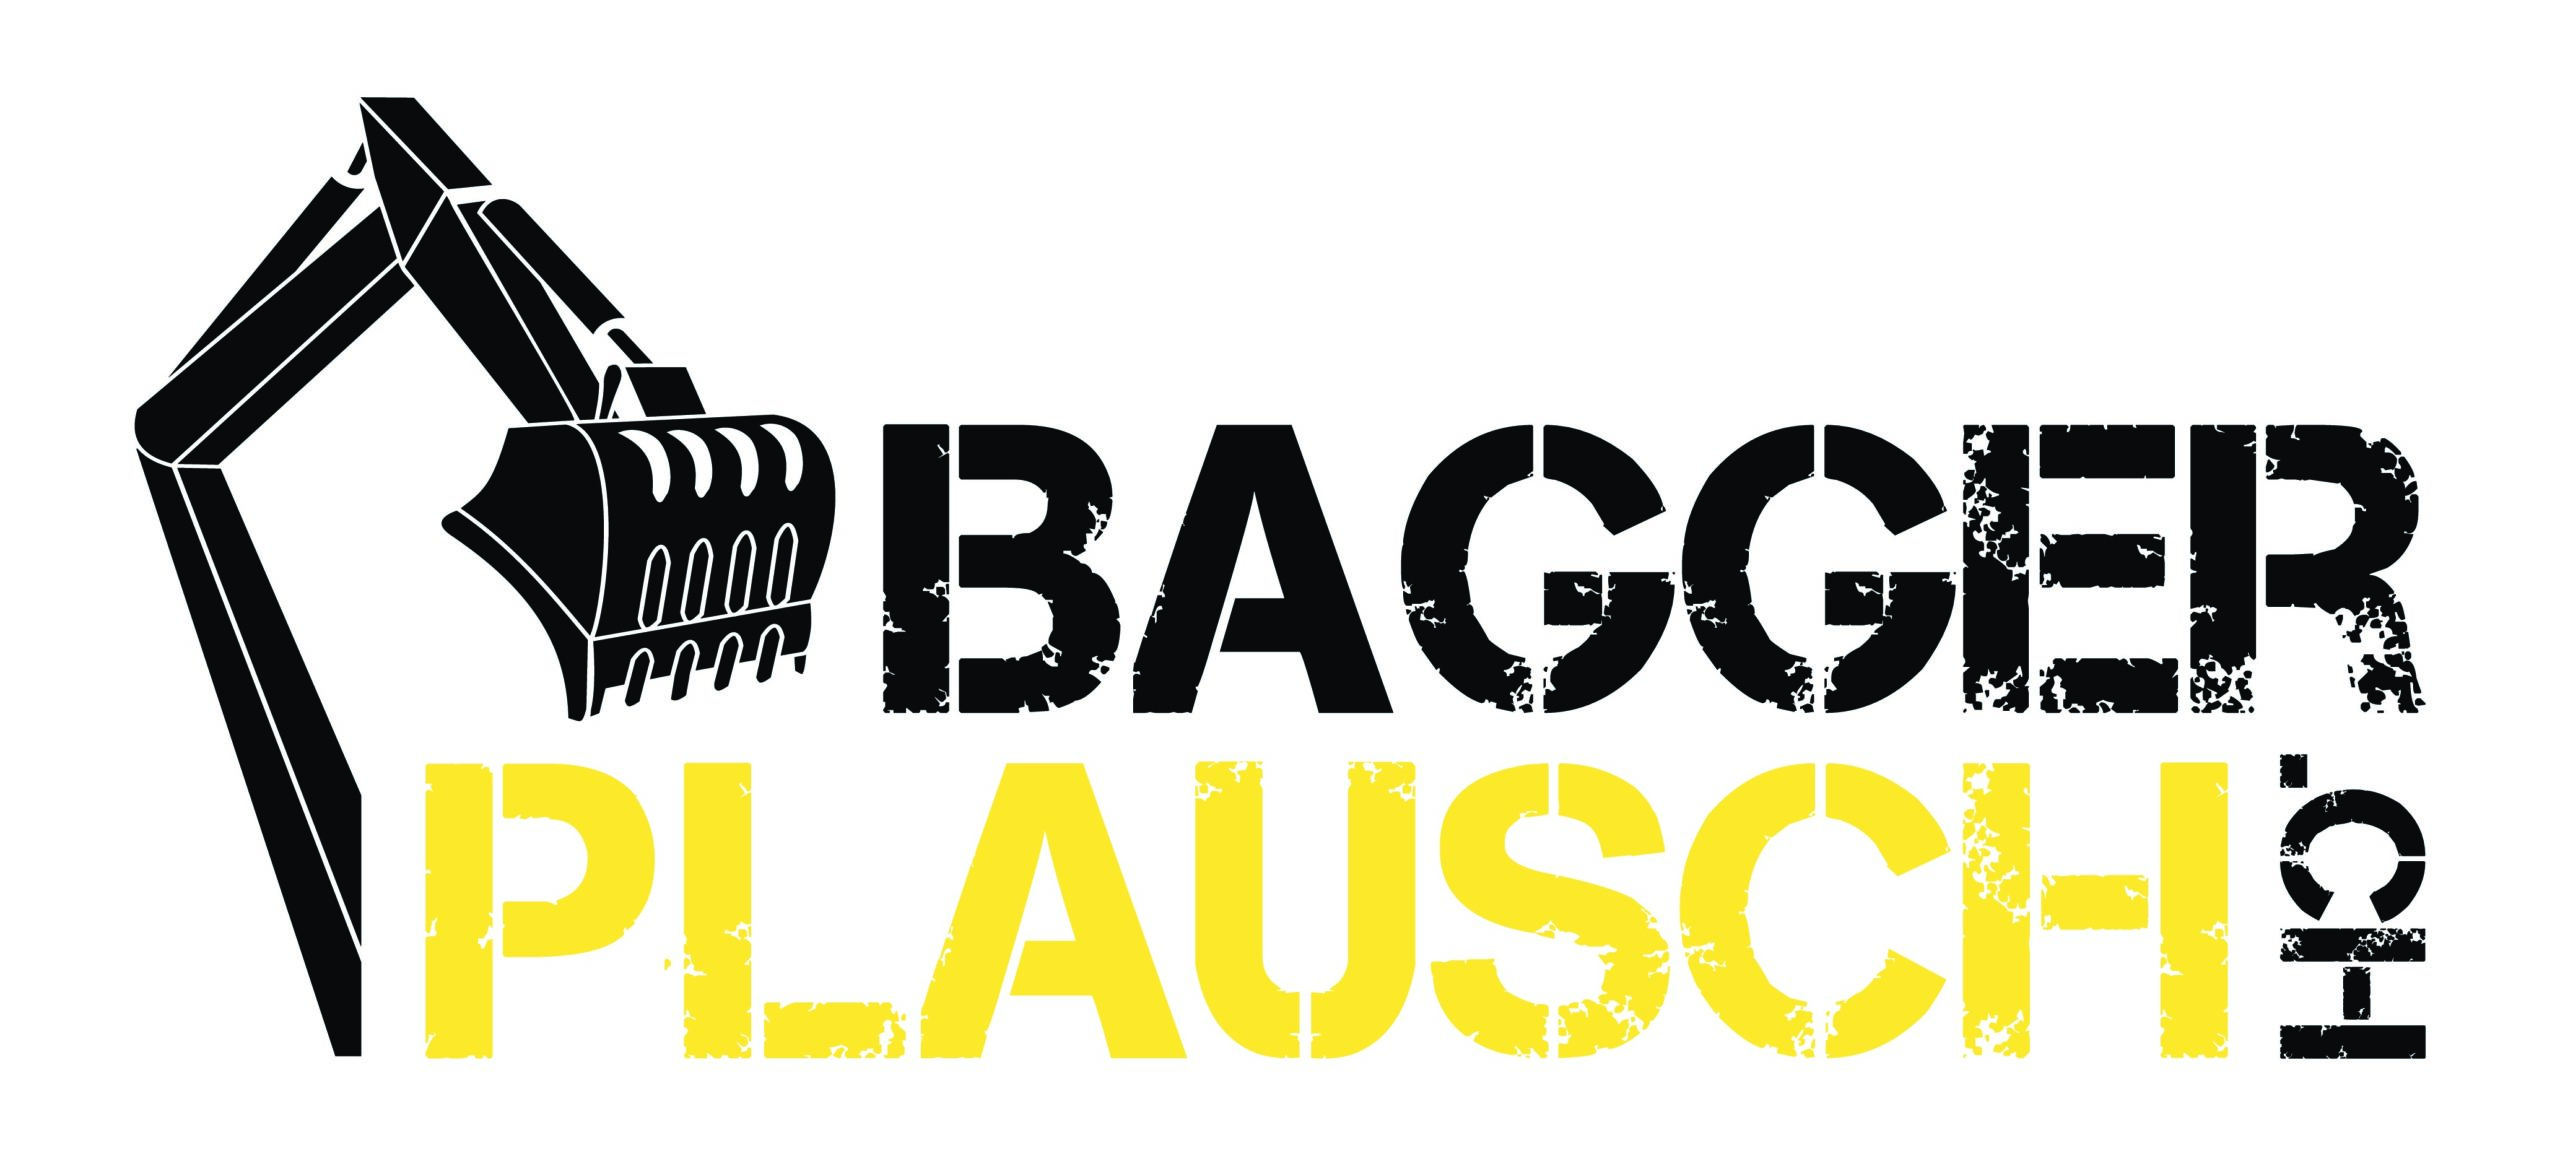 Baggerplausch_Social-media-video_Content